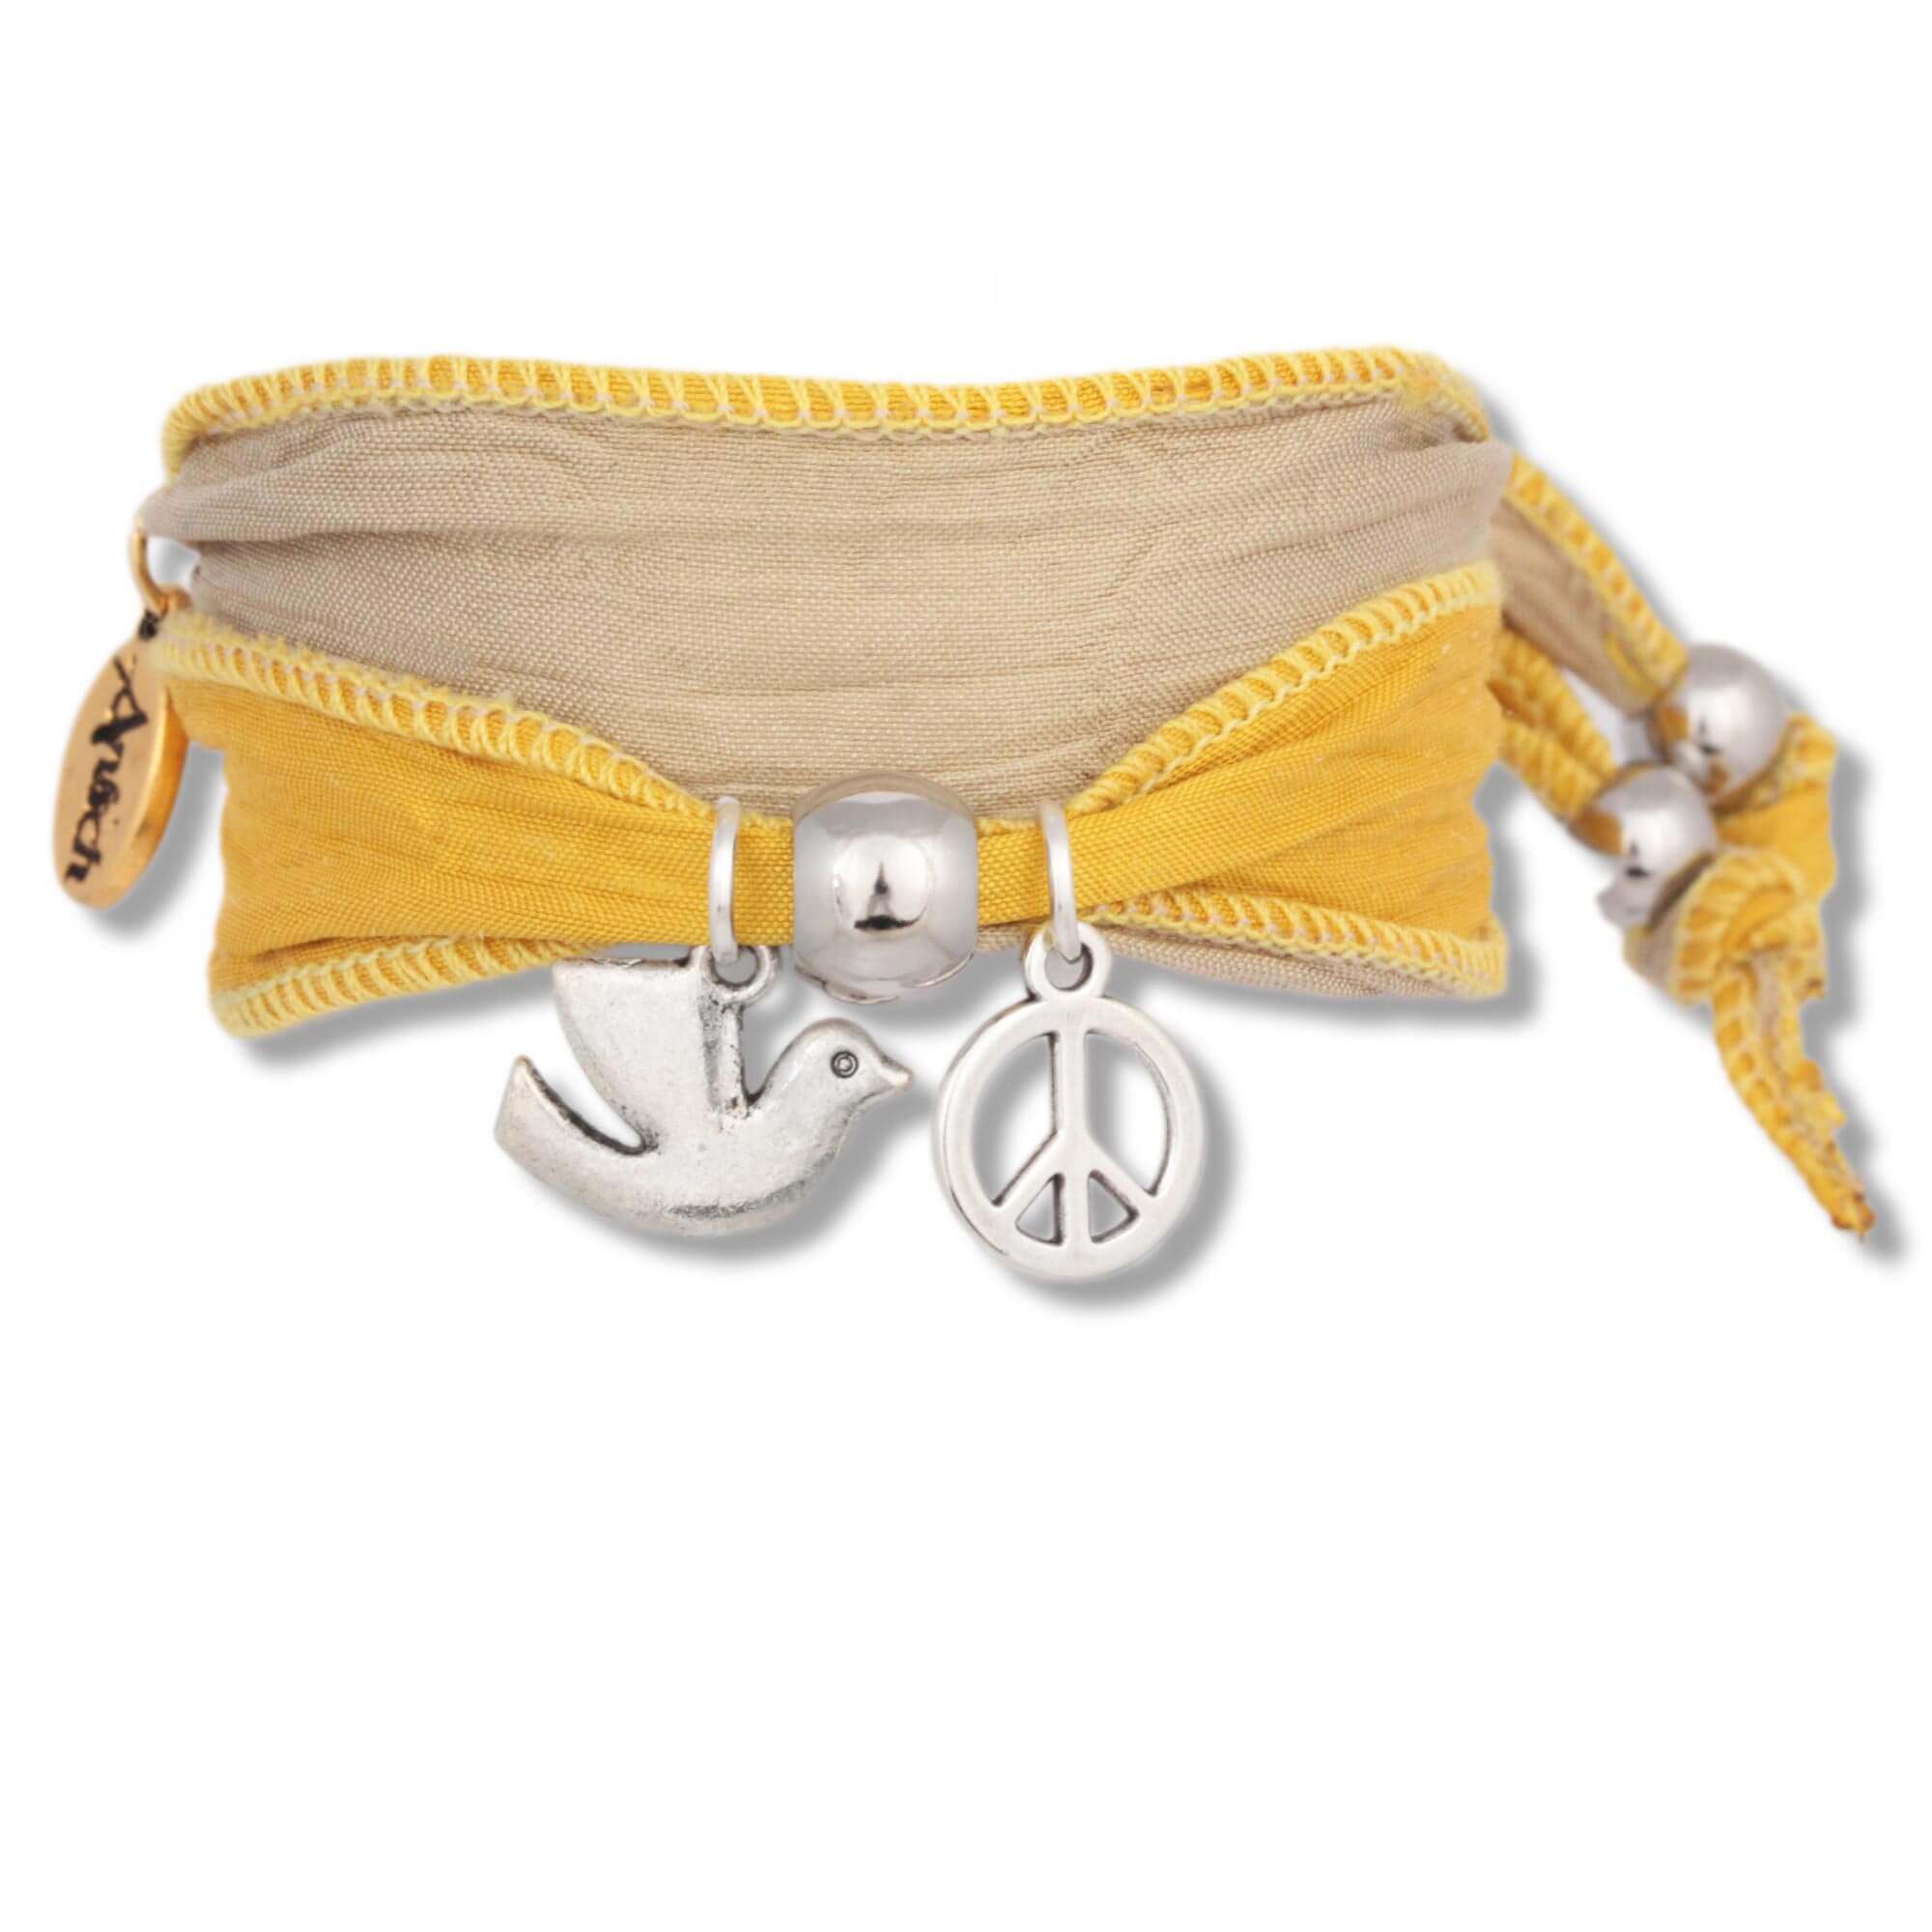 Yellow Caramel - Dove of Peace Bracelet made from Sari fabrics